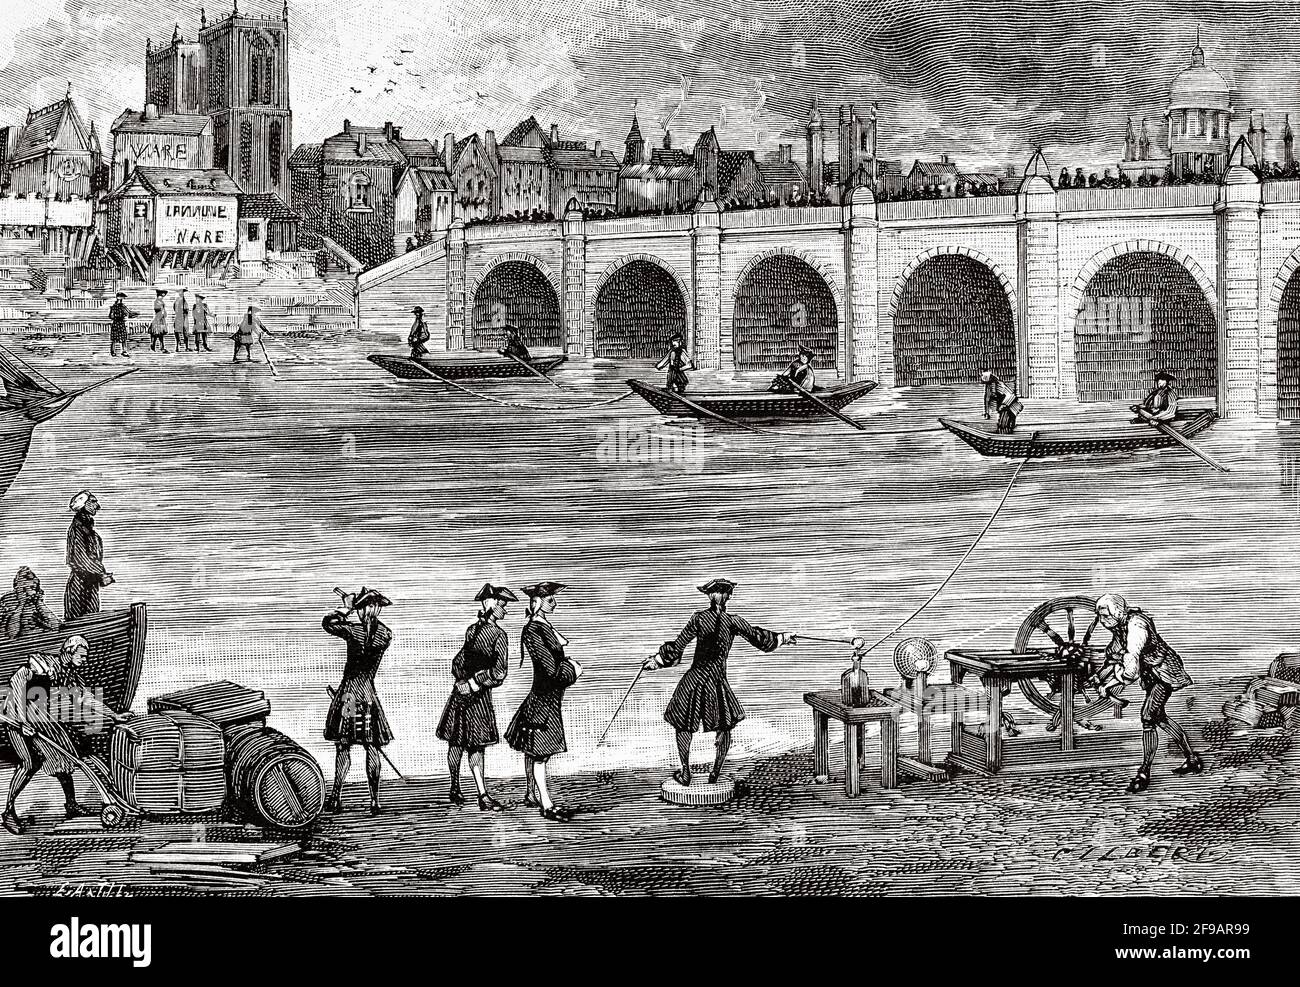 Stromexperiment durchgeführt von William Watson (1715-1787) an den Ufern der Themse im achtzehnten Jahrhundert, England. Alte, gravierte Illustration aus dem 19. Jahrhundert von La Nature 1889 Stockfoto